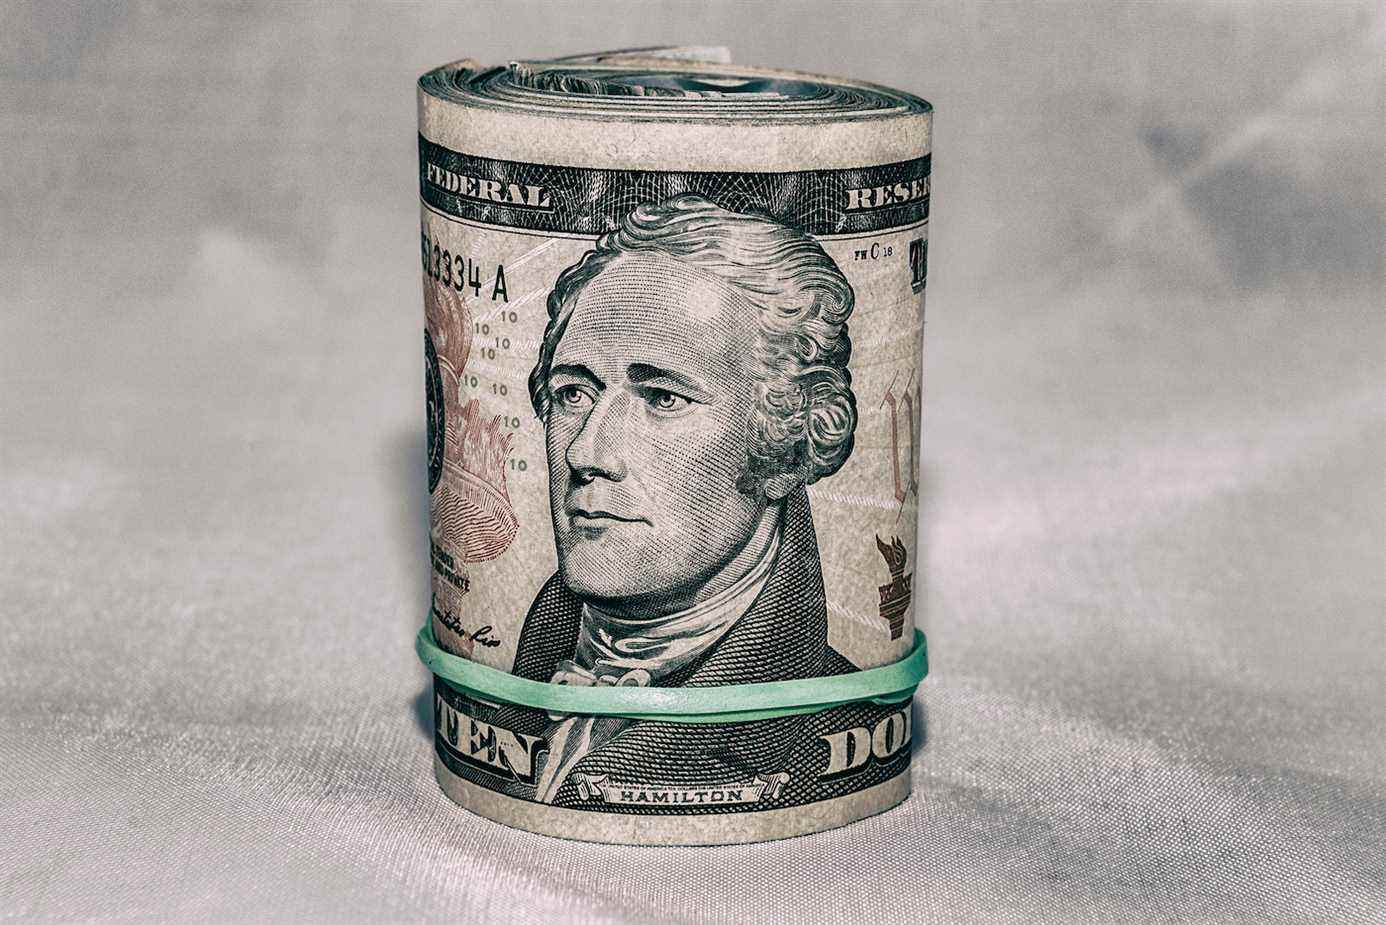 Un rouleau de monnaie américaine avec un billet de 10 $ à l'extérieur, le portrait d'Alexander Hamilton au centre.